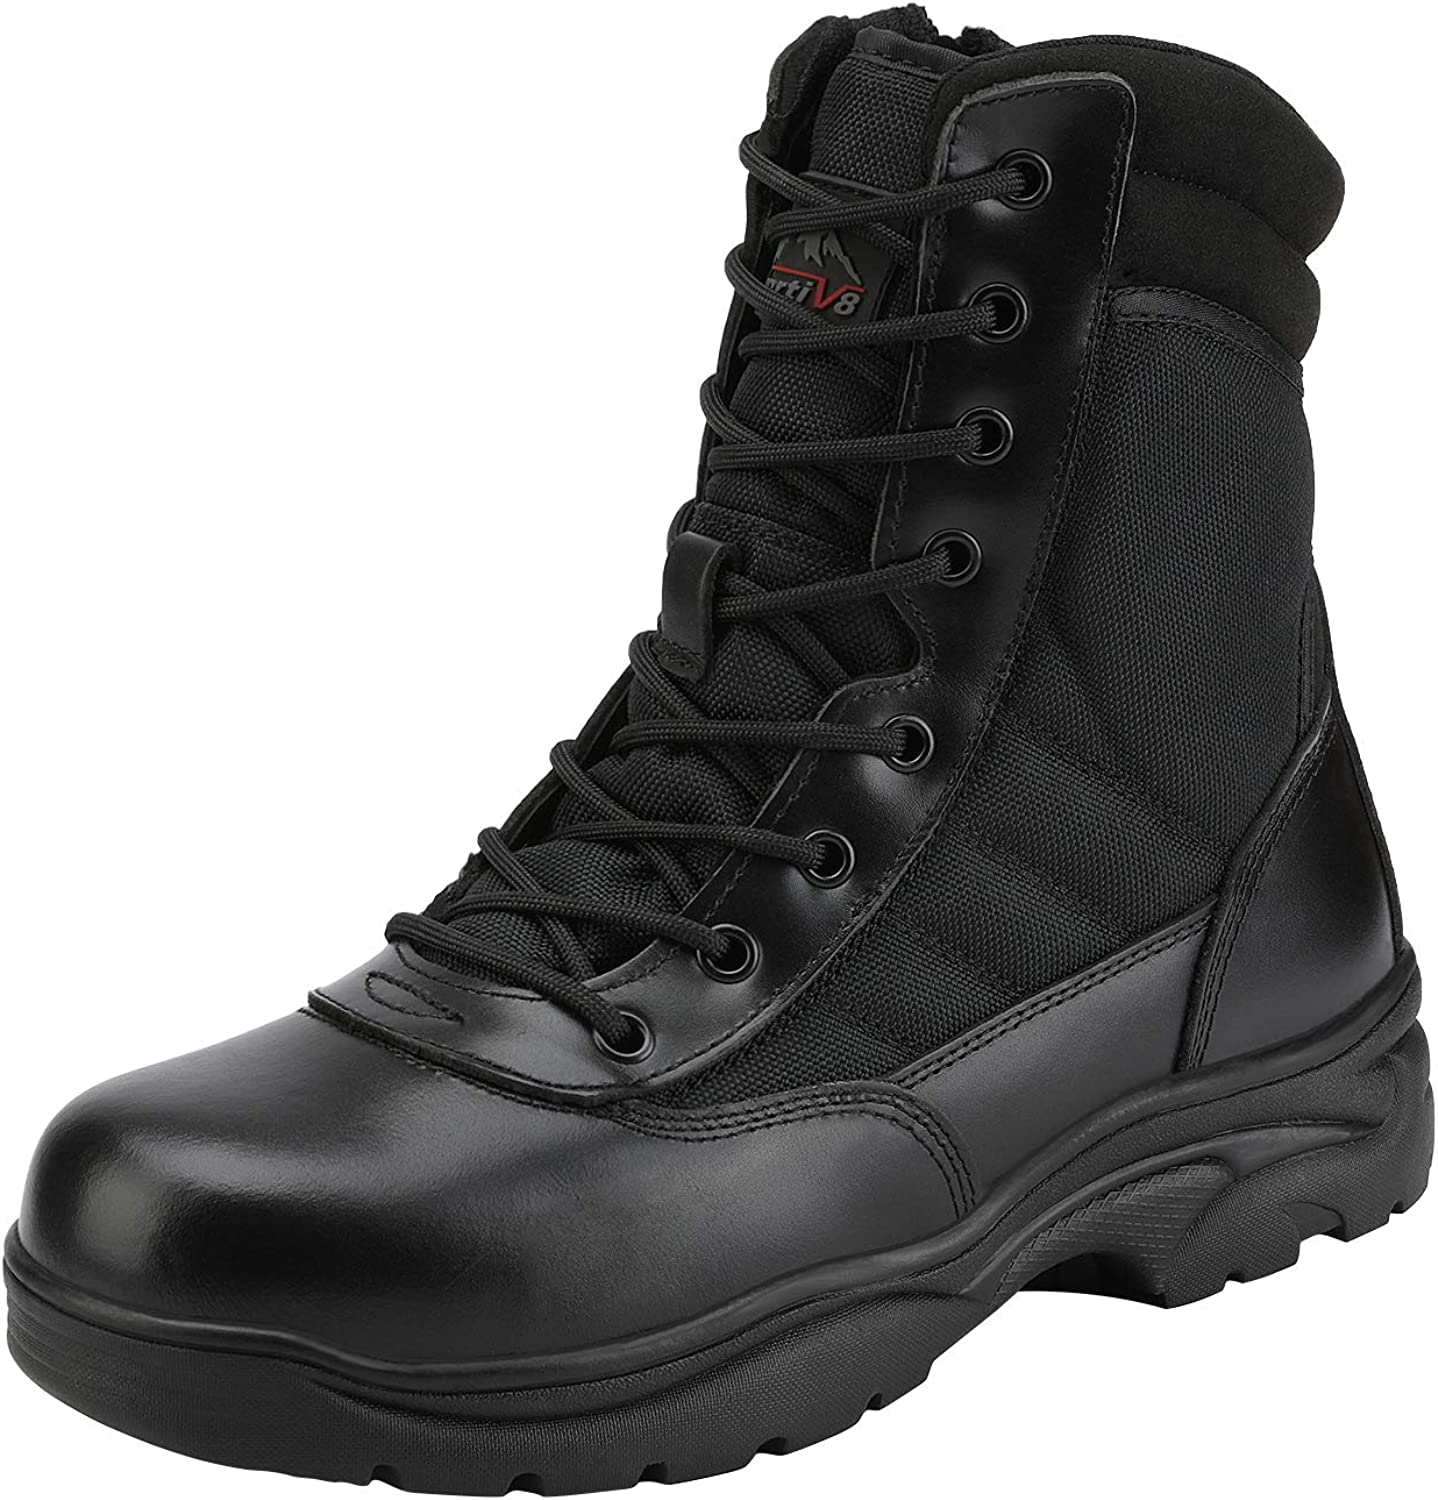  CQR Men's Military Tactical Boots, Lightweight 6